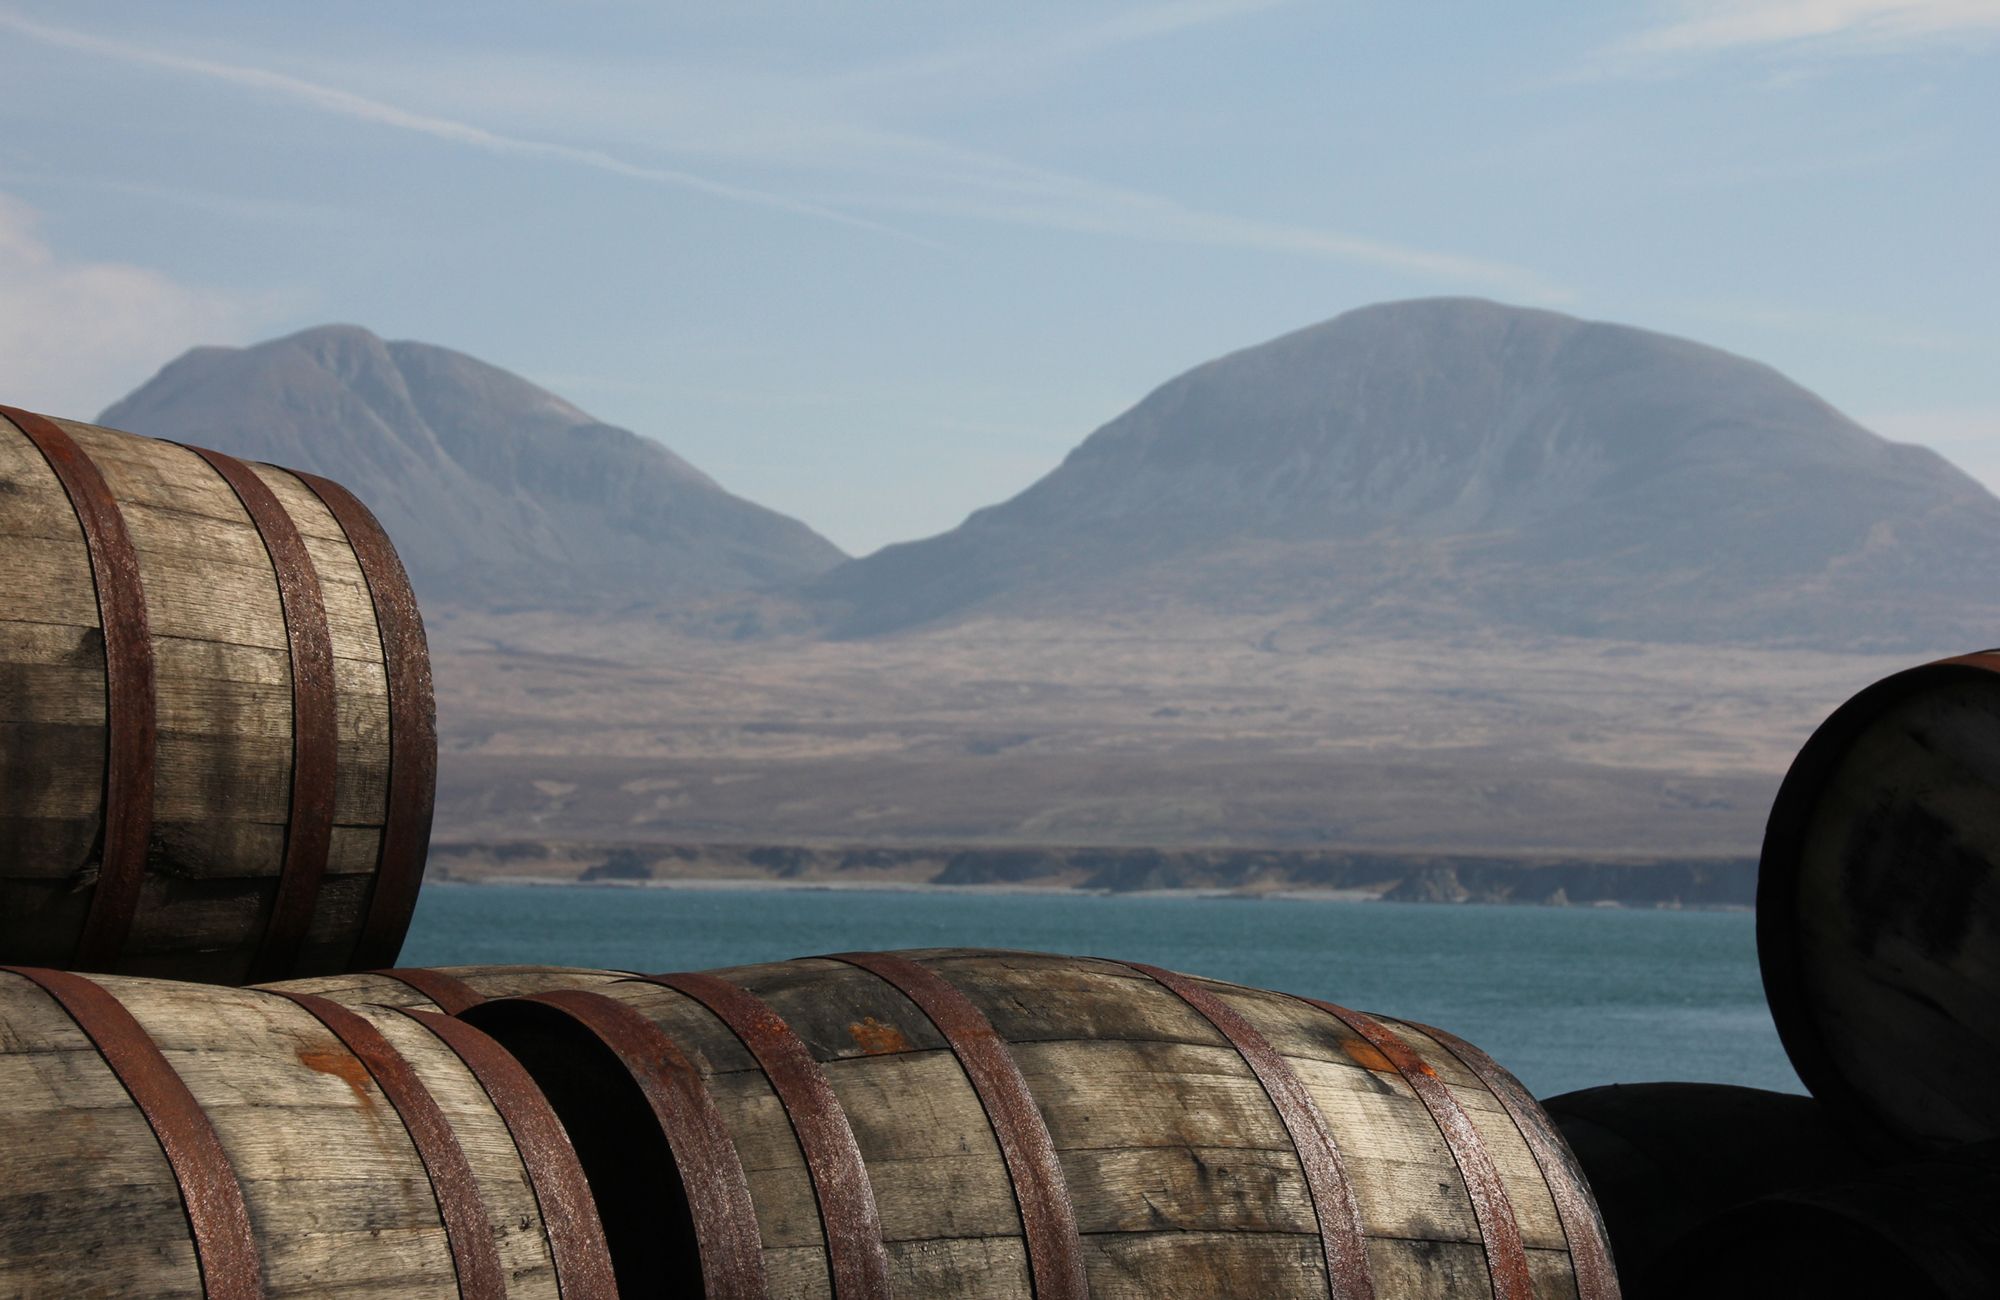 Whisky casks on Islay